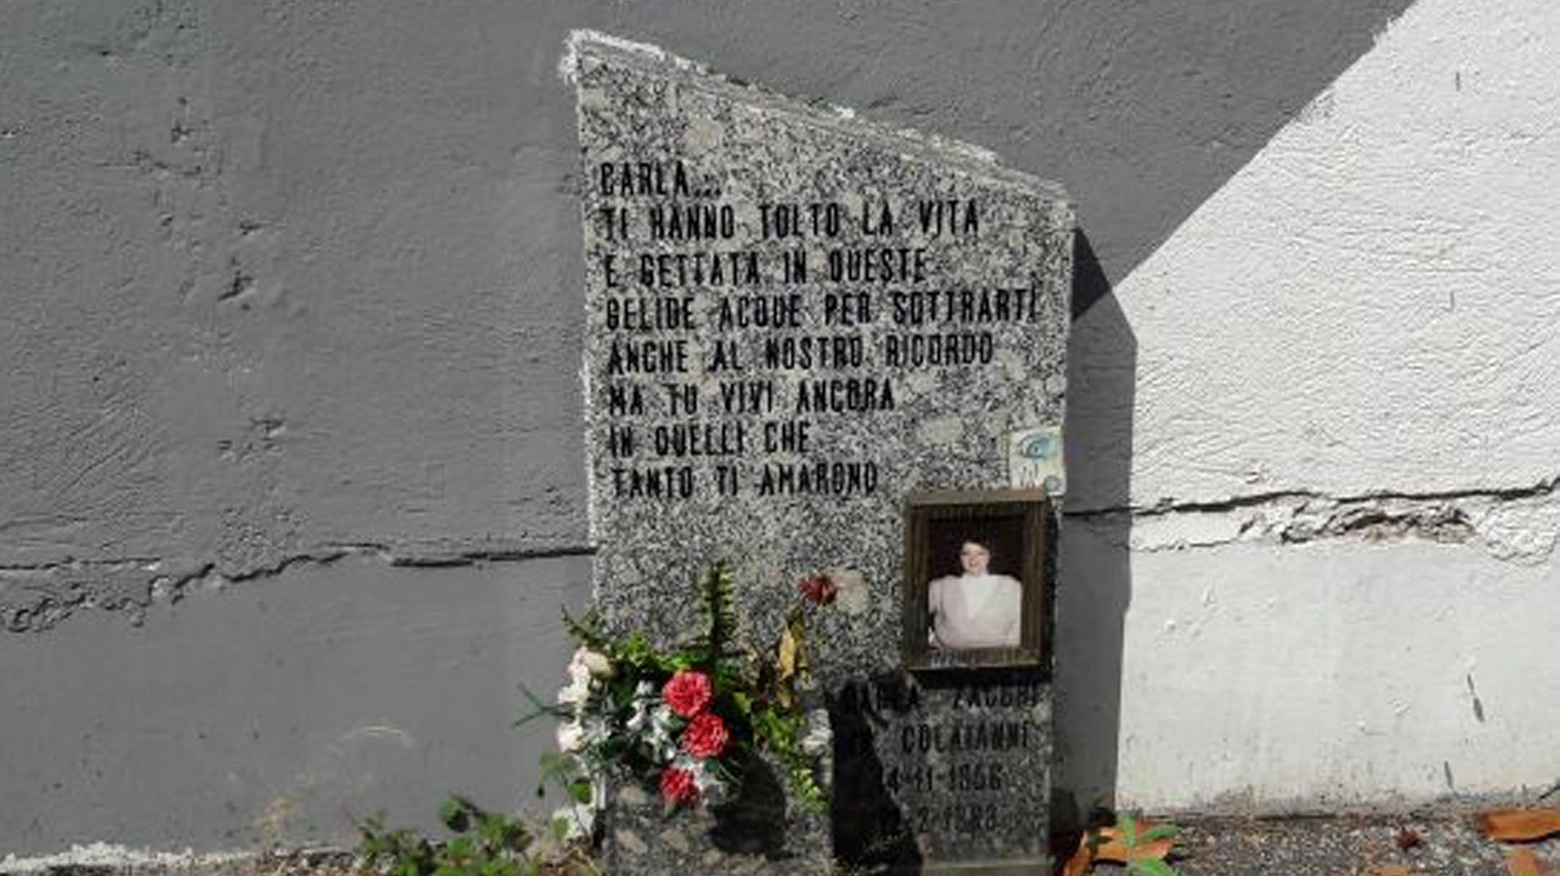 Una lapide commemora a Monza Carla Zacchi, prima vittima del serial killer